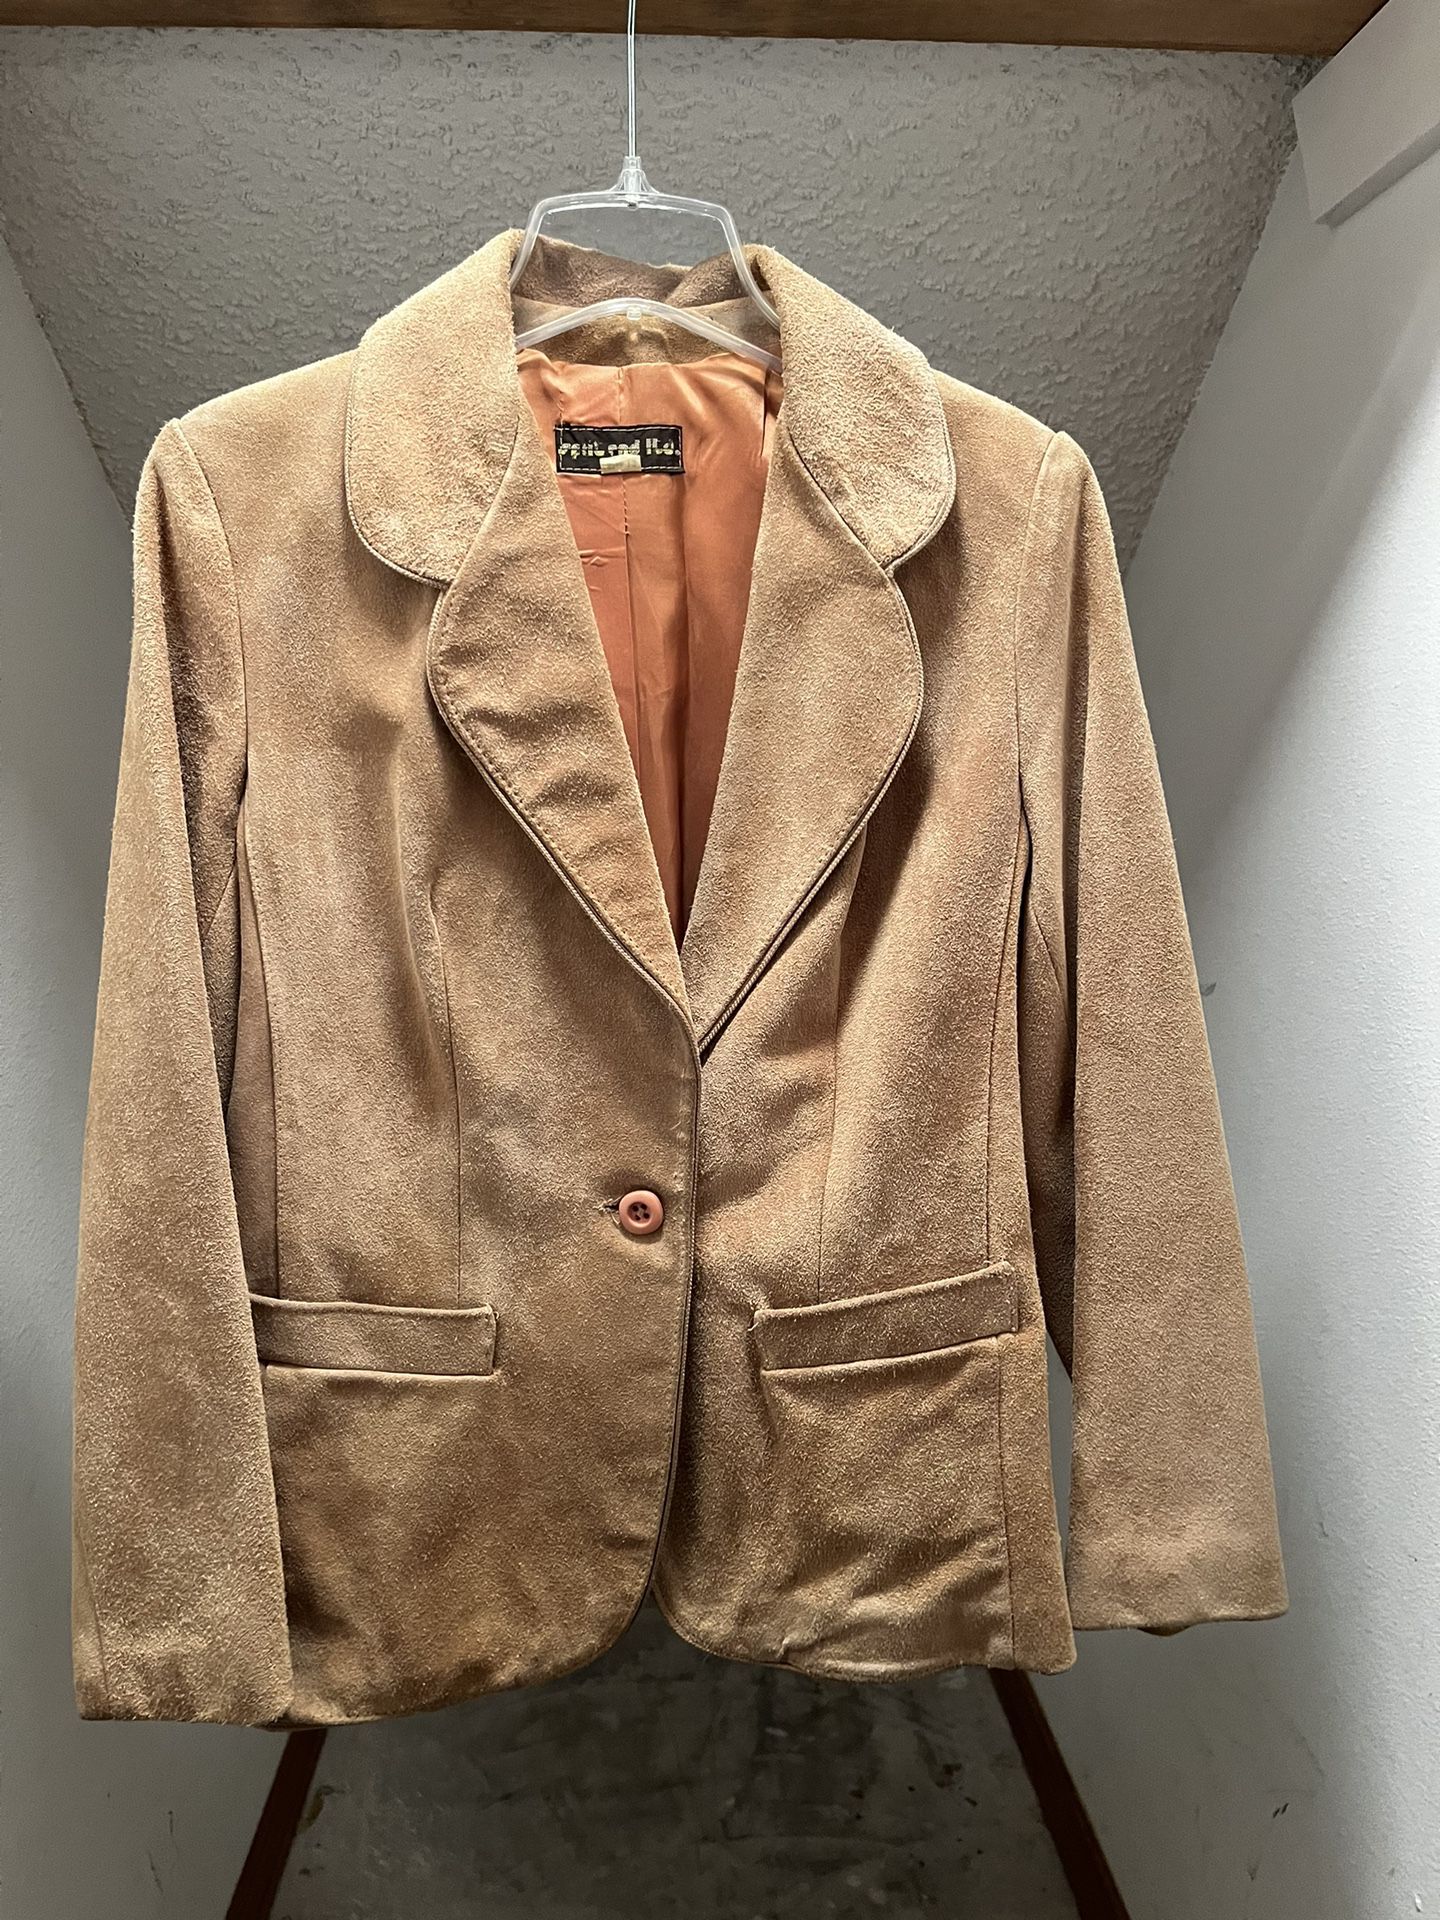 Split End Ltd Suede Women's Jacket Coat